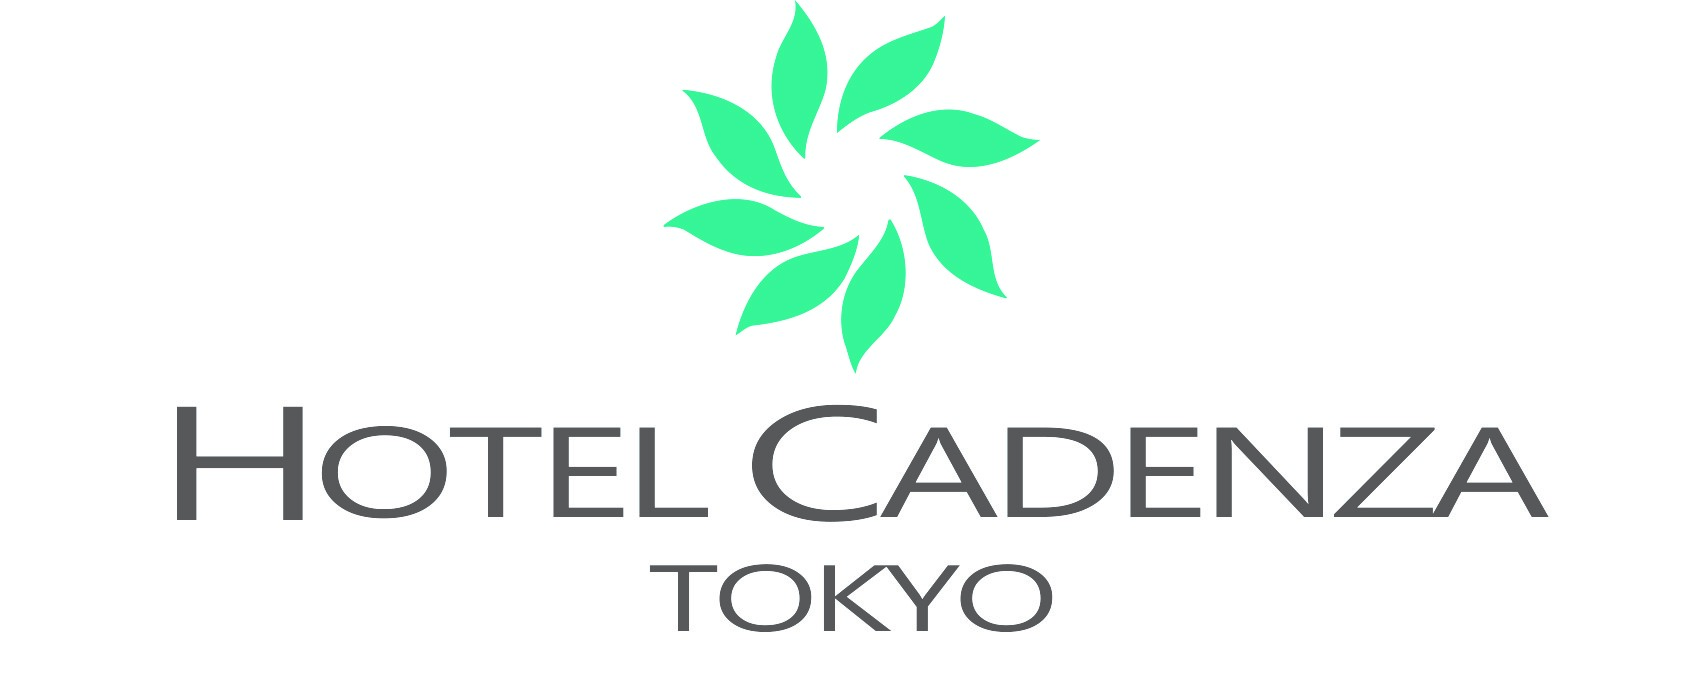 ホテルカデンツァ東京